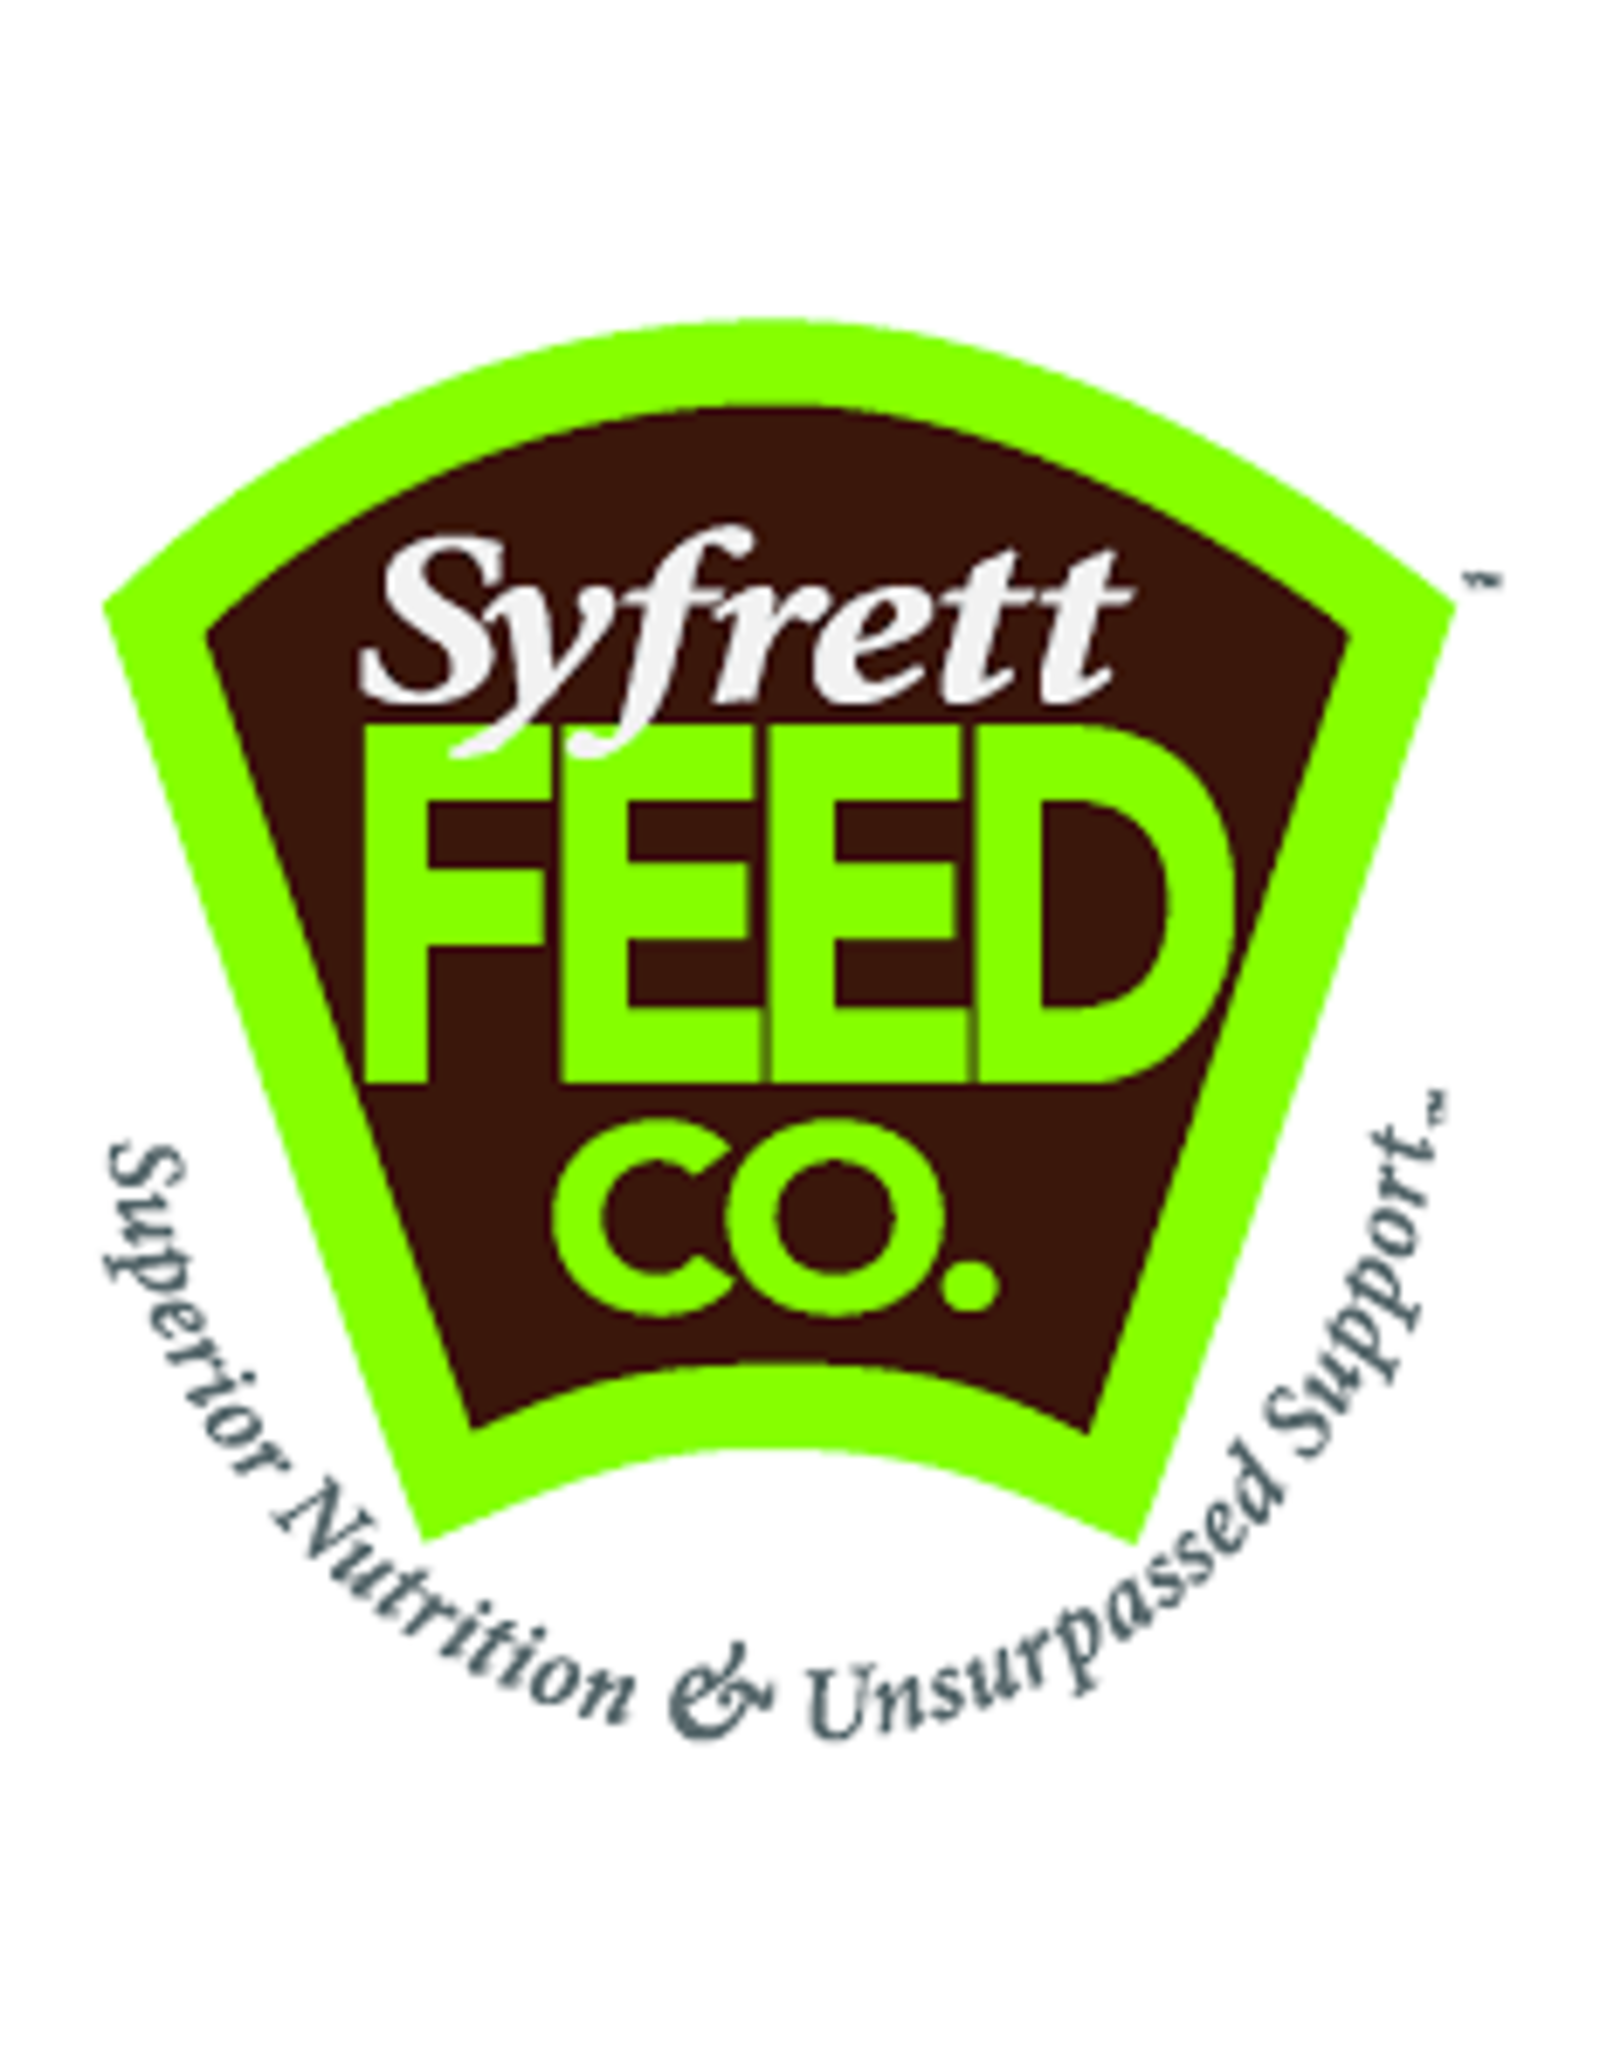 Syfrett Feed Syfrett Proline Cattle Breeder Mineral w/Organic Selenium